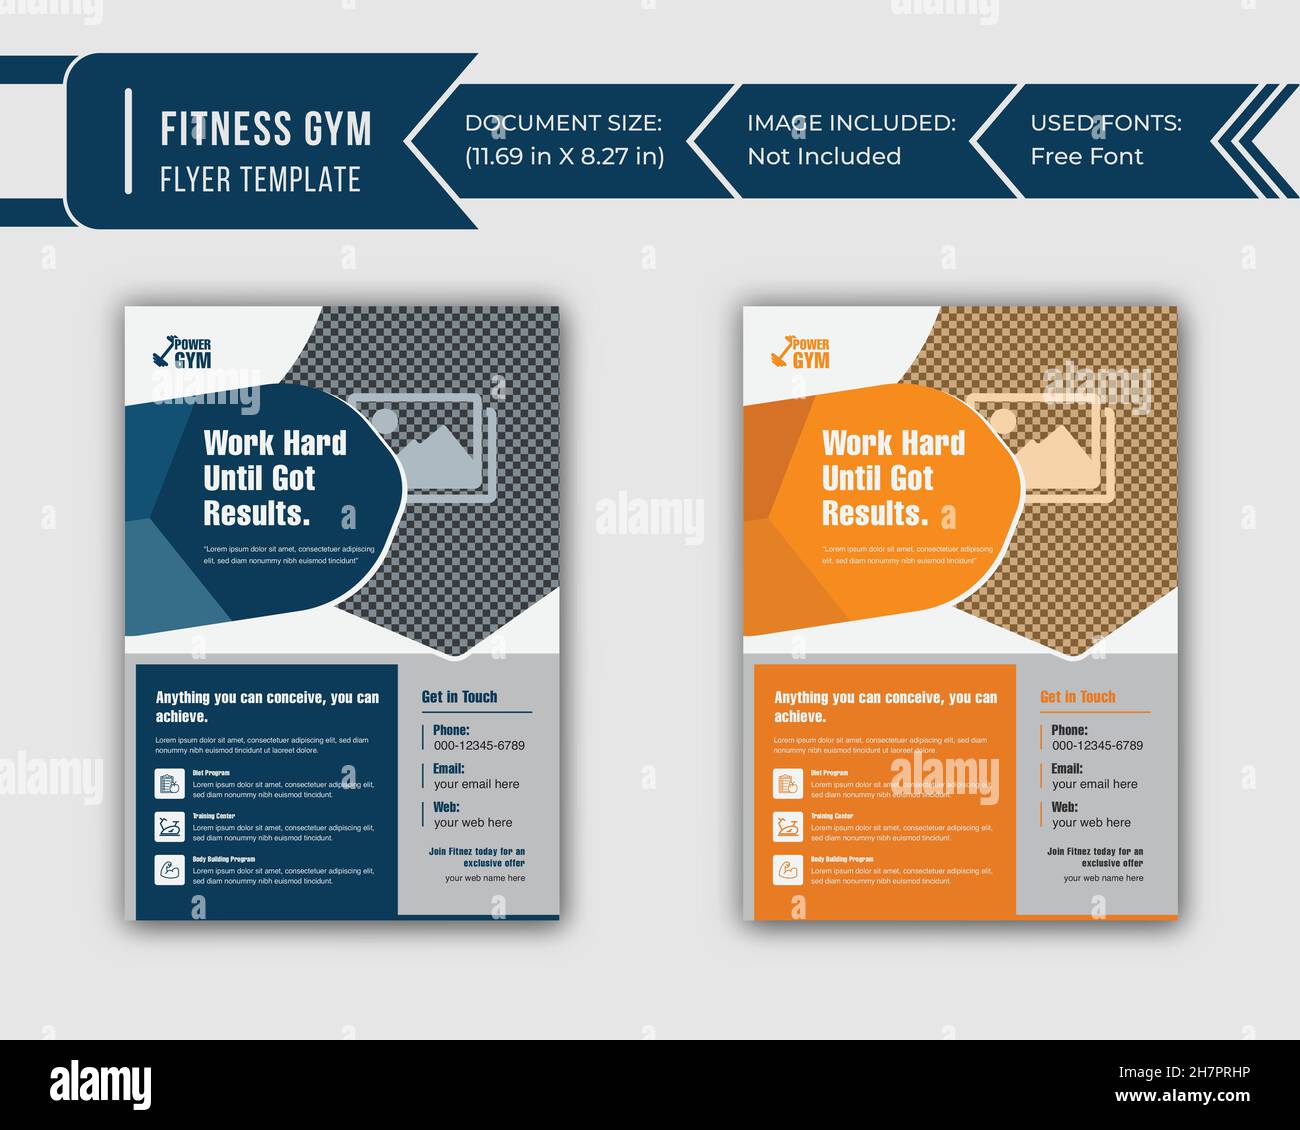 Fitness Gym Flyer Template Design in Free Vector Design, palestra fitness center flyer template design Illustrazione Vettoriale